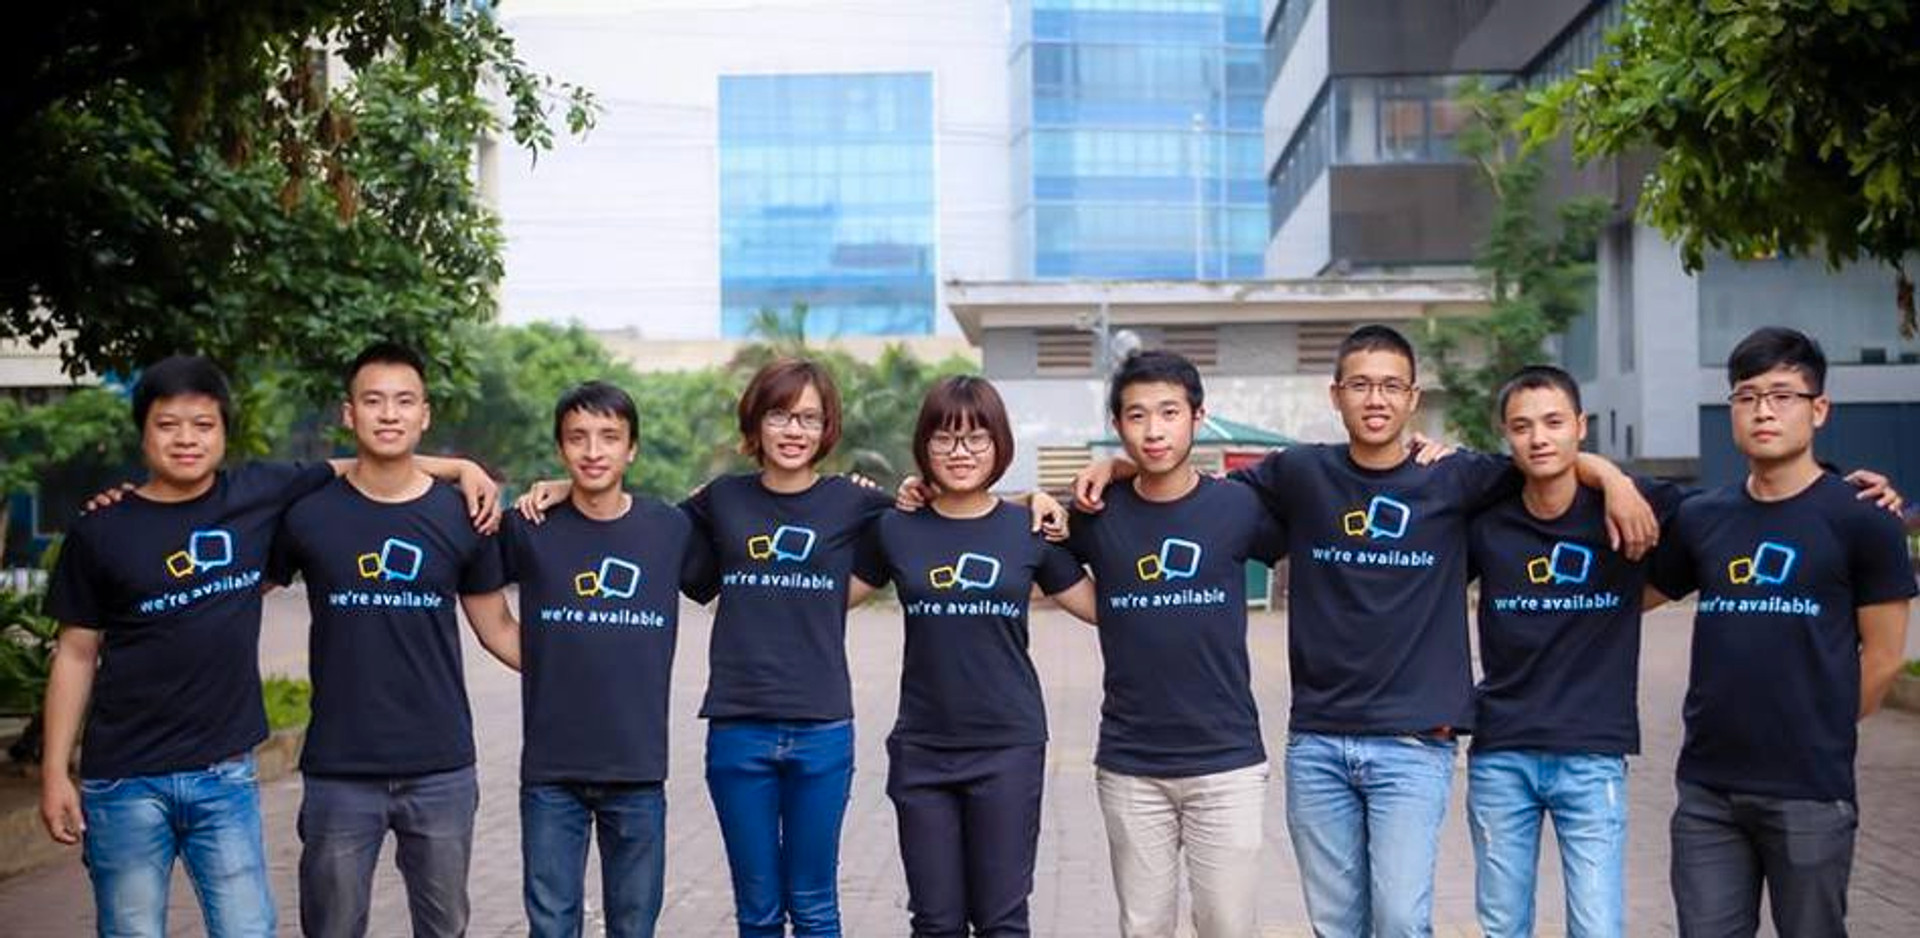 Công ty cổ phần giải pháp trực tuyến VietnamBIZ